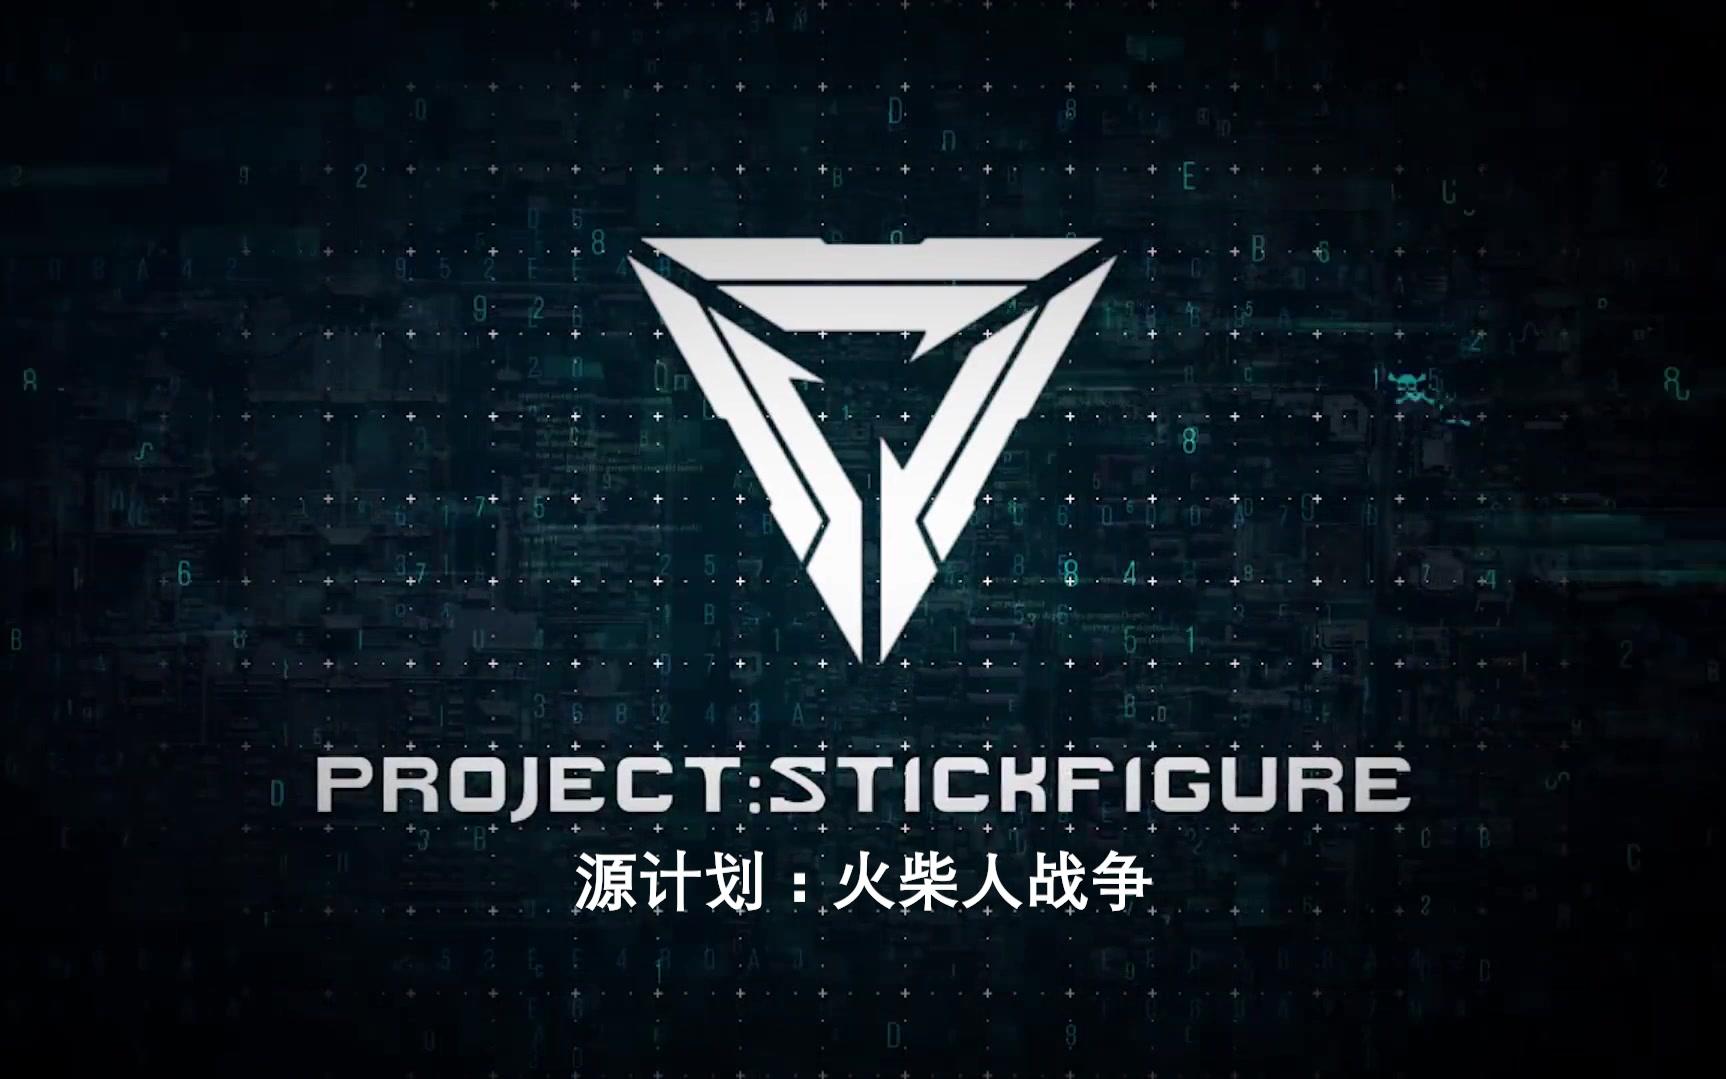 【国外大神koroanims】lol源计划:火柴人project stickfigure——英雄